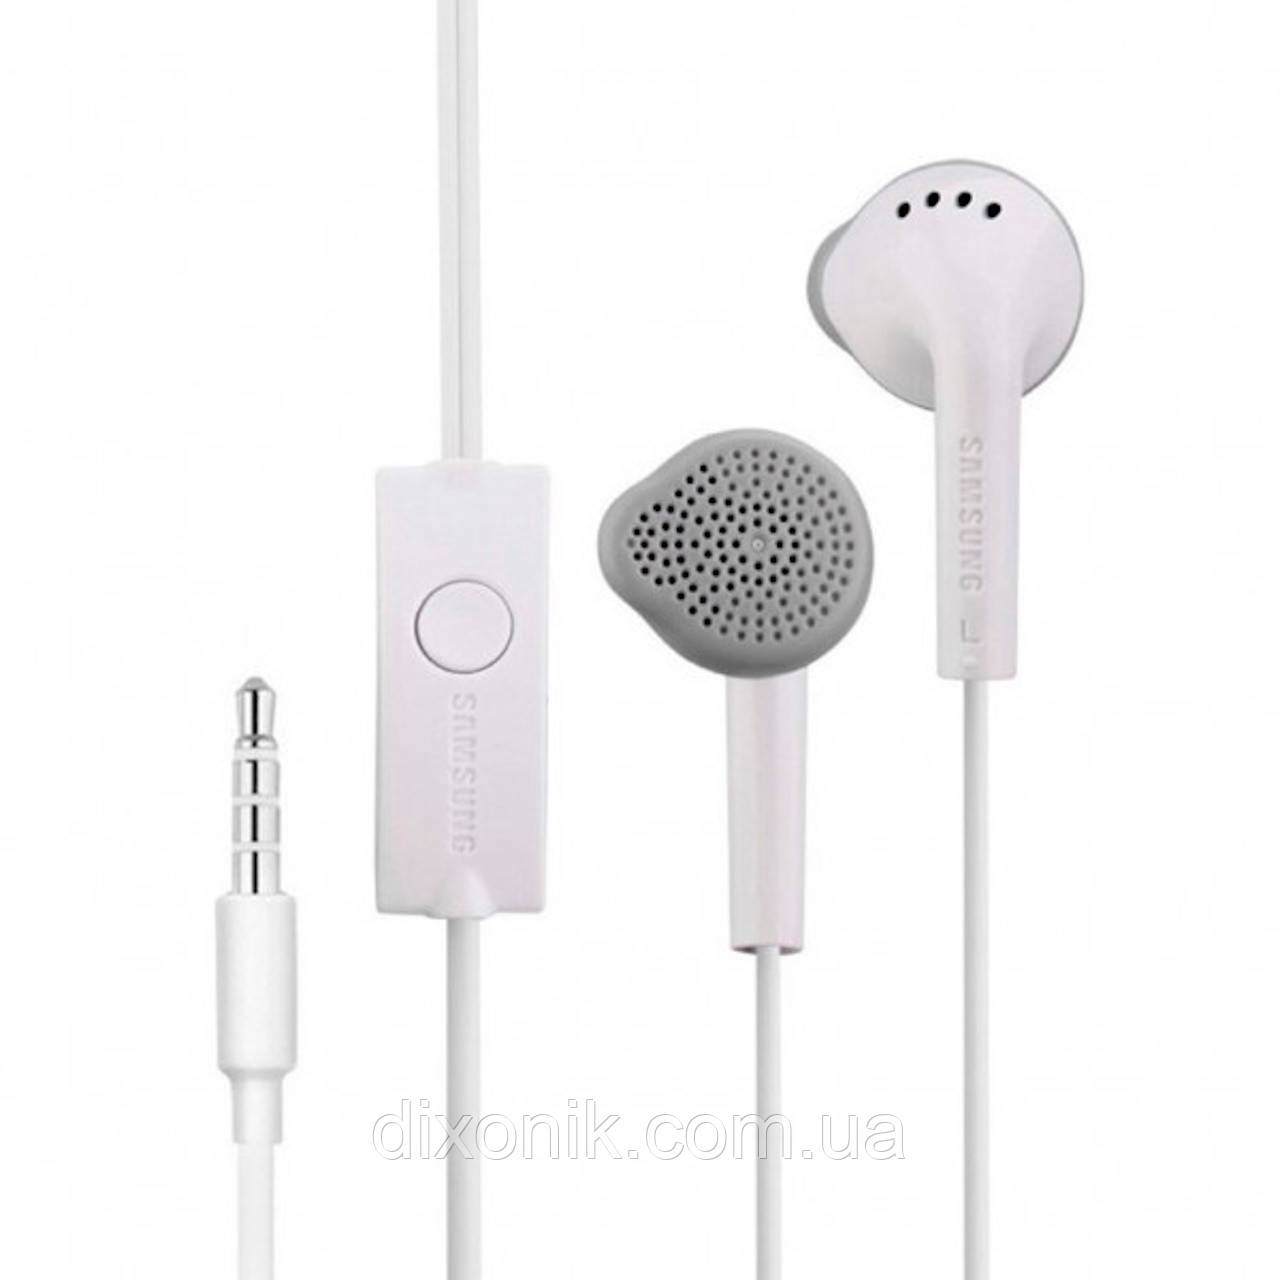 Дротові навушники Samsung EHS61 white гарнітура з мікрофоном для телефону або планшета